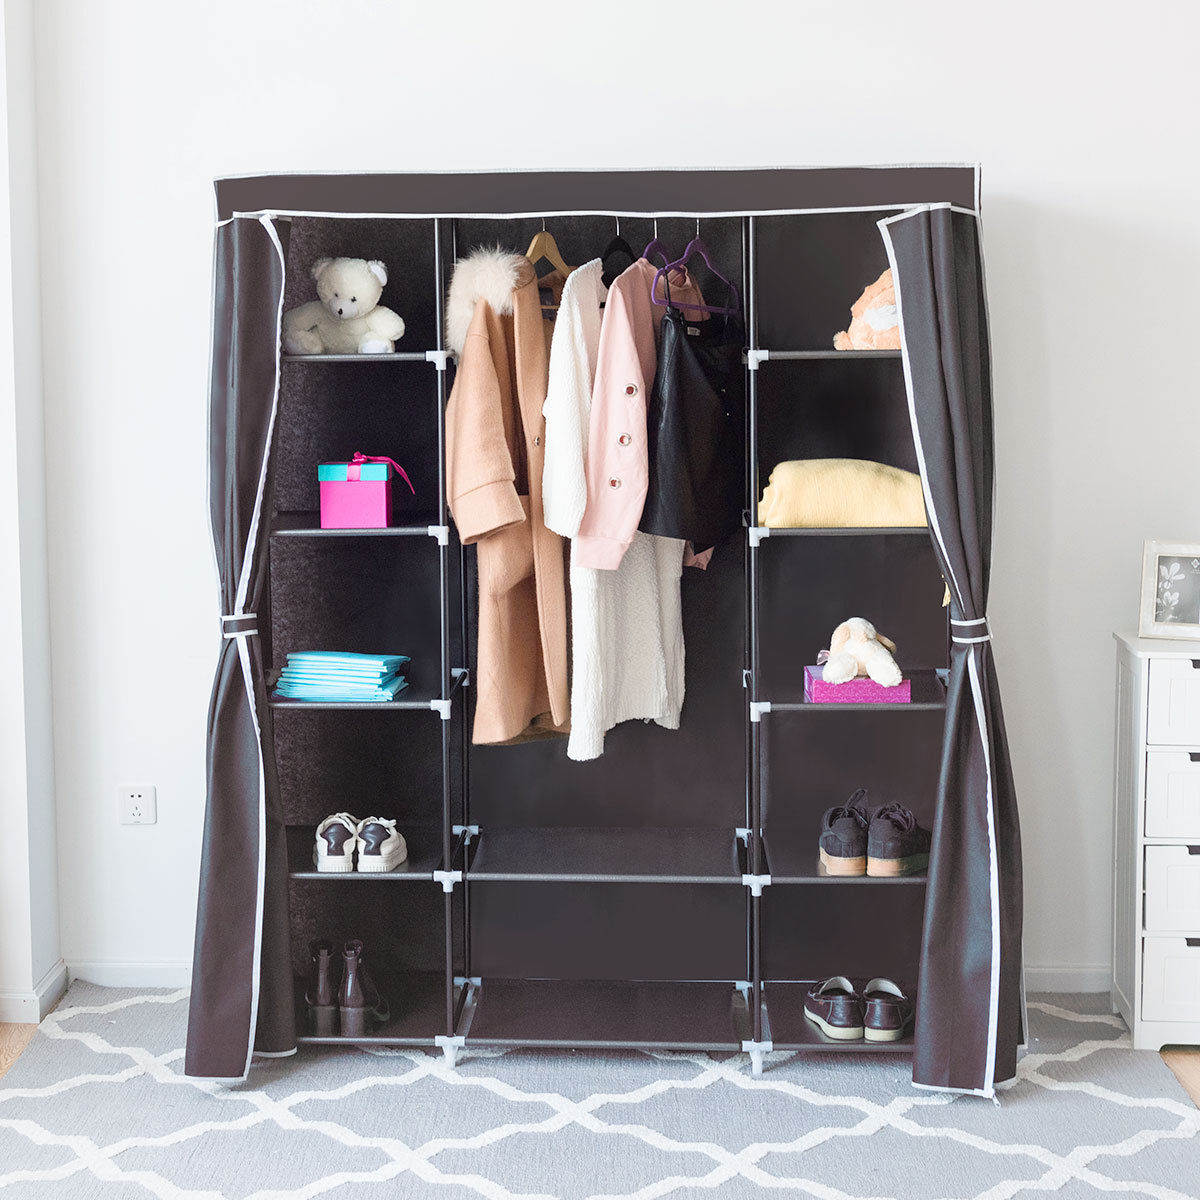 Lựa chọn tủ áo vải dù cho không gian nhà bạn giúp tiết kiệm chi phí hiệu quả